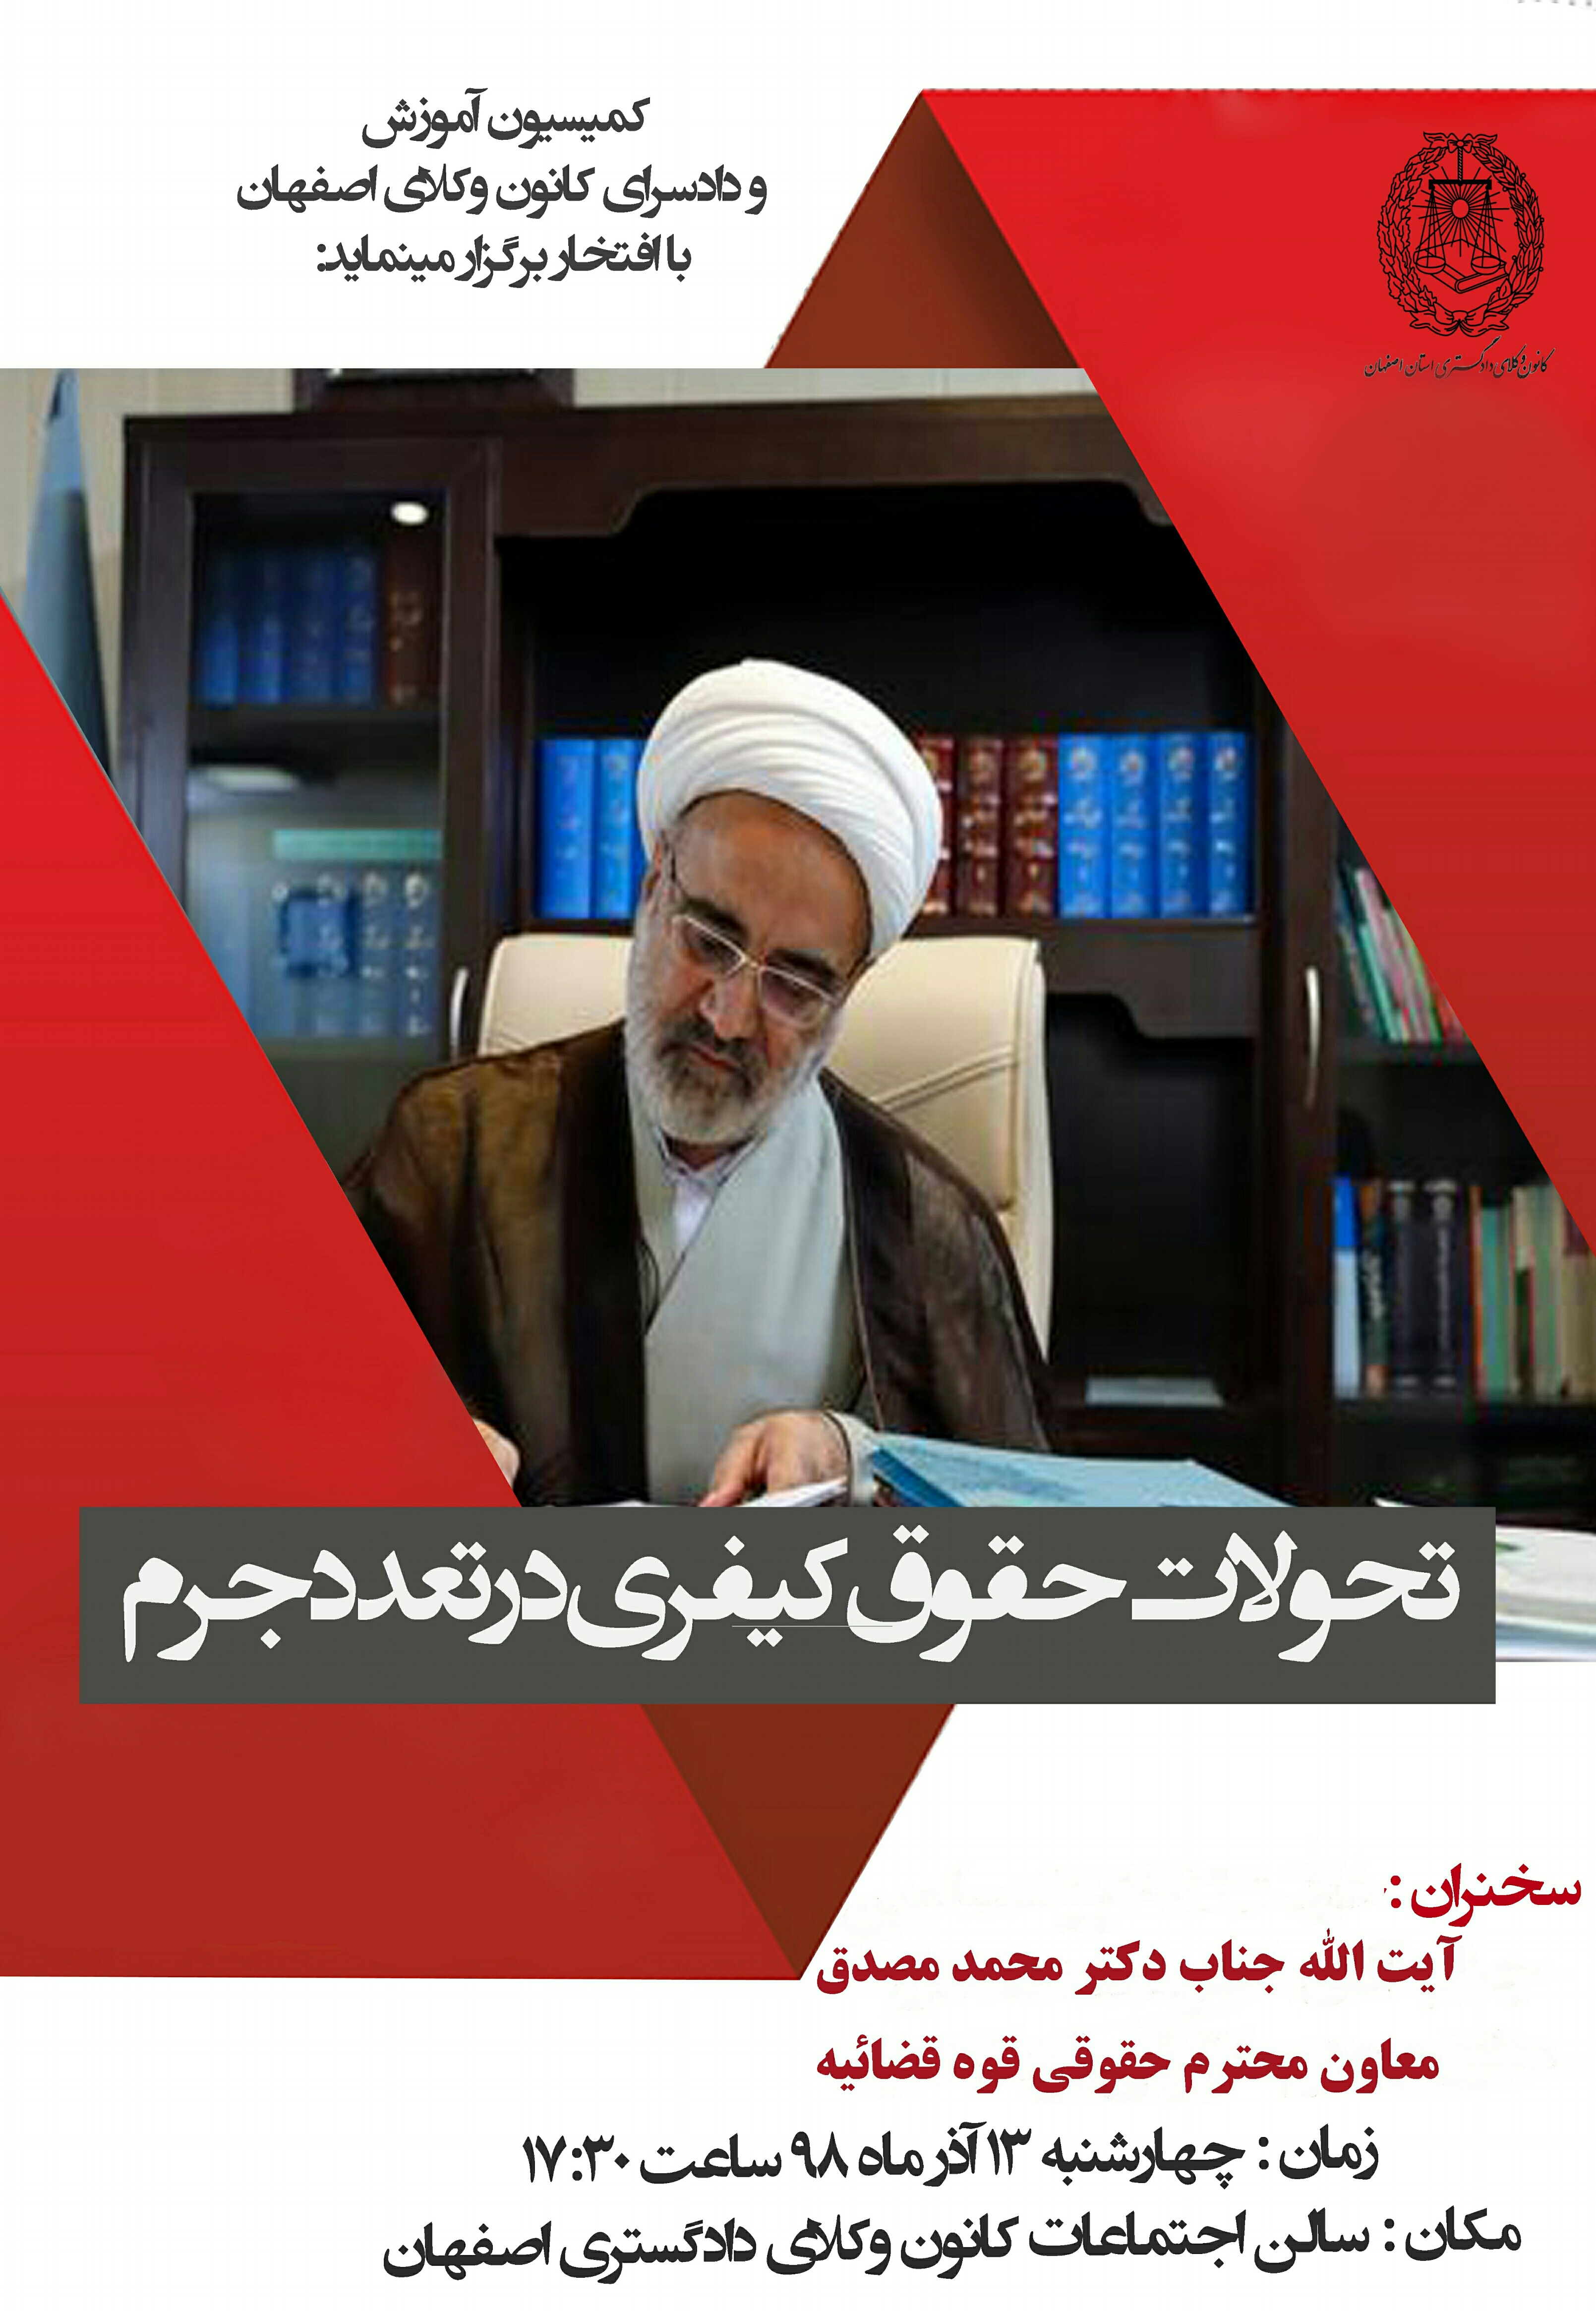 کمیسیون آموزش و دادسرای انتظامی کانون وکلای دادگستری استان اصفهان برگزار میکند .